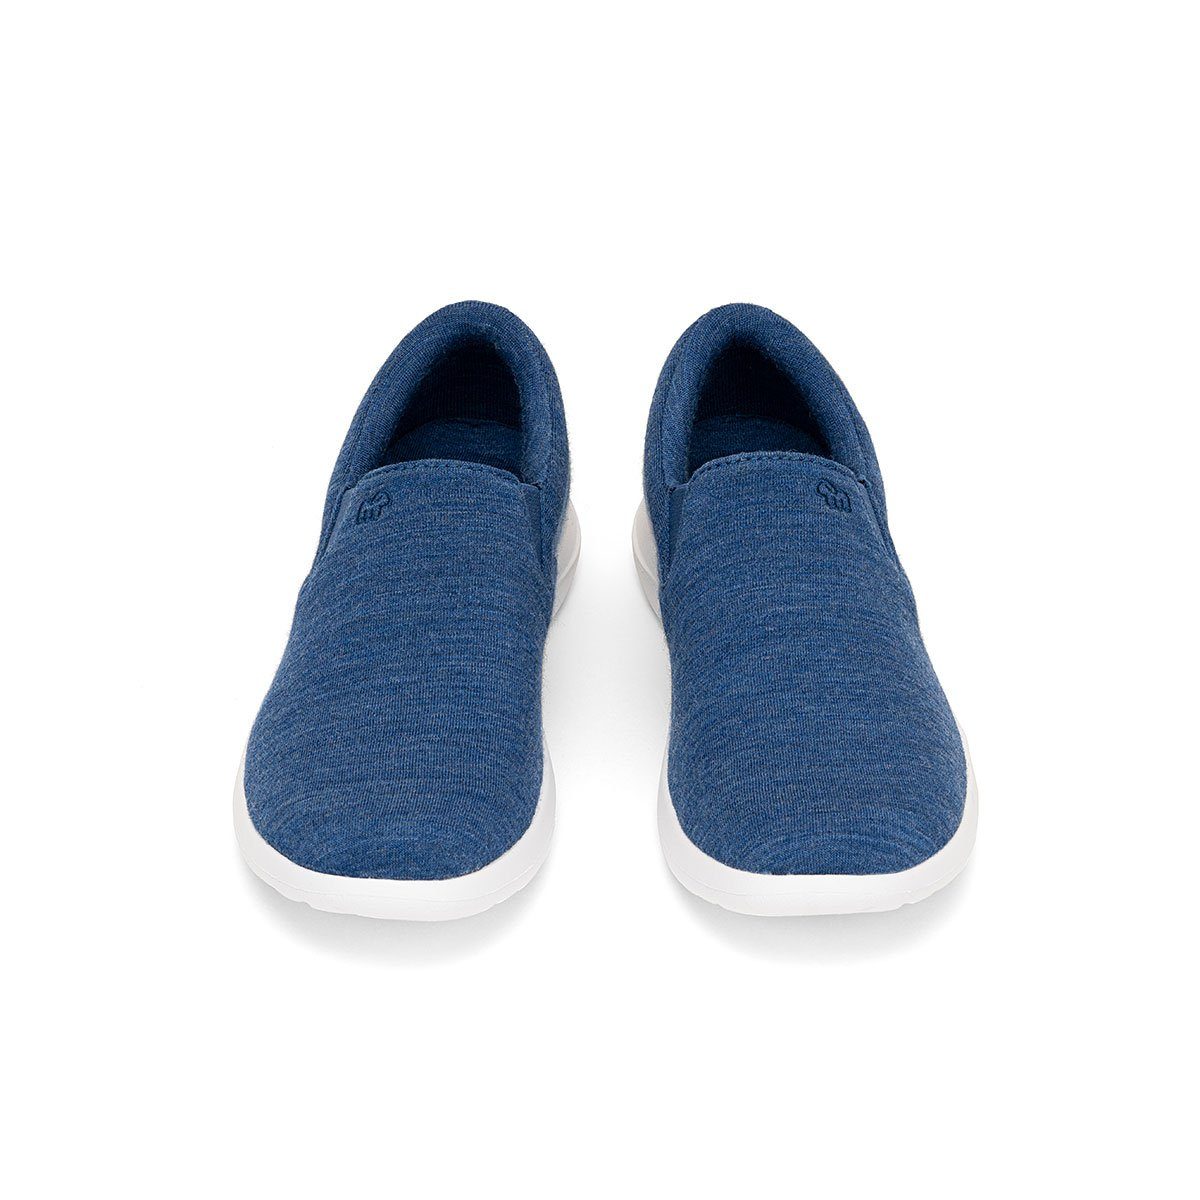 merinoshoes.de Merinowolle Eleganter aus mit Slip-On - Damenschuh Atmungsaktiver Sneaker merinos blauer Schuh jeansblau Funktion